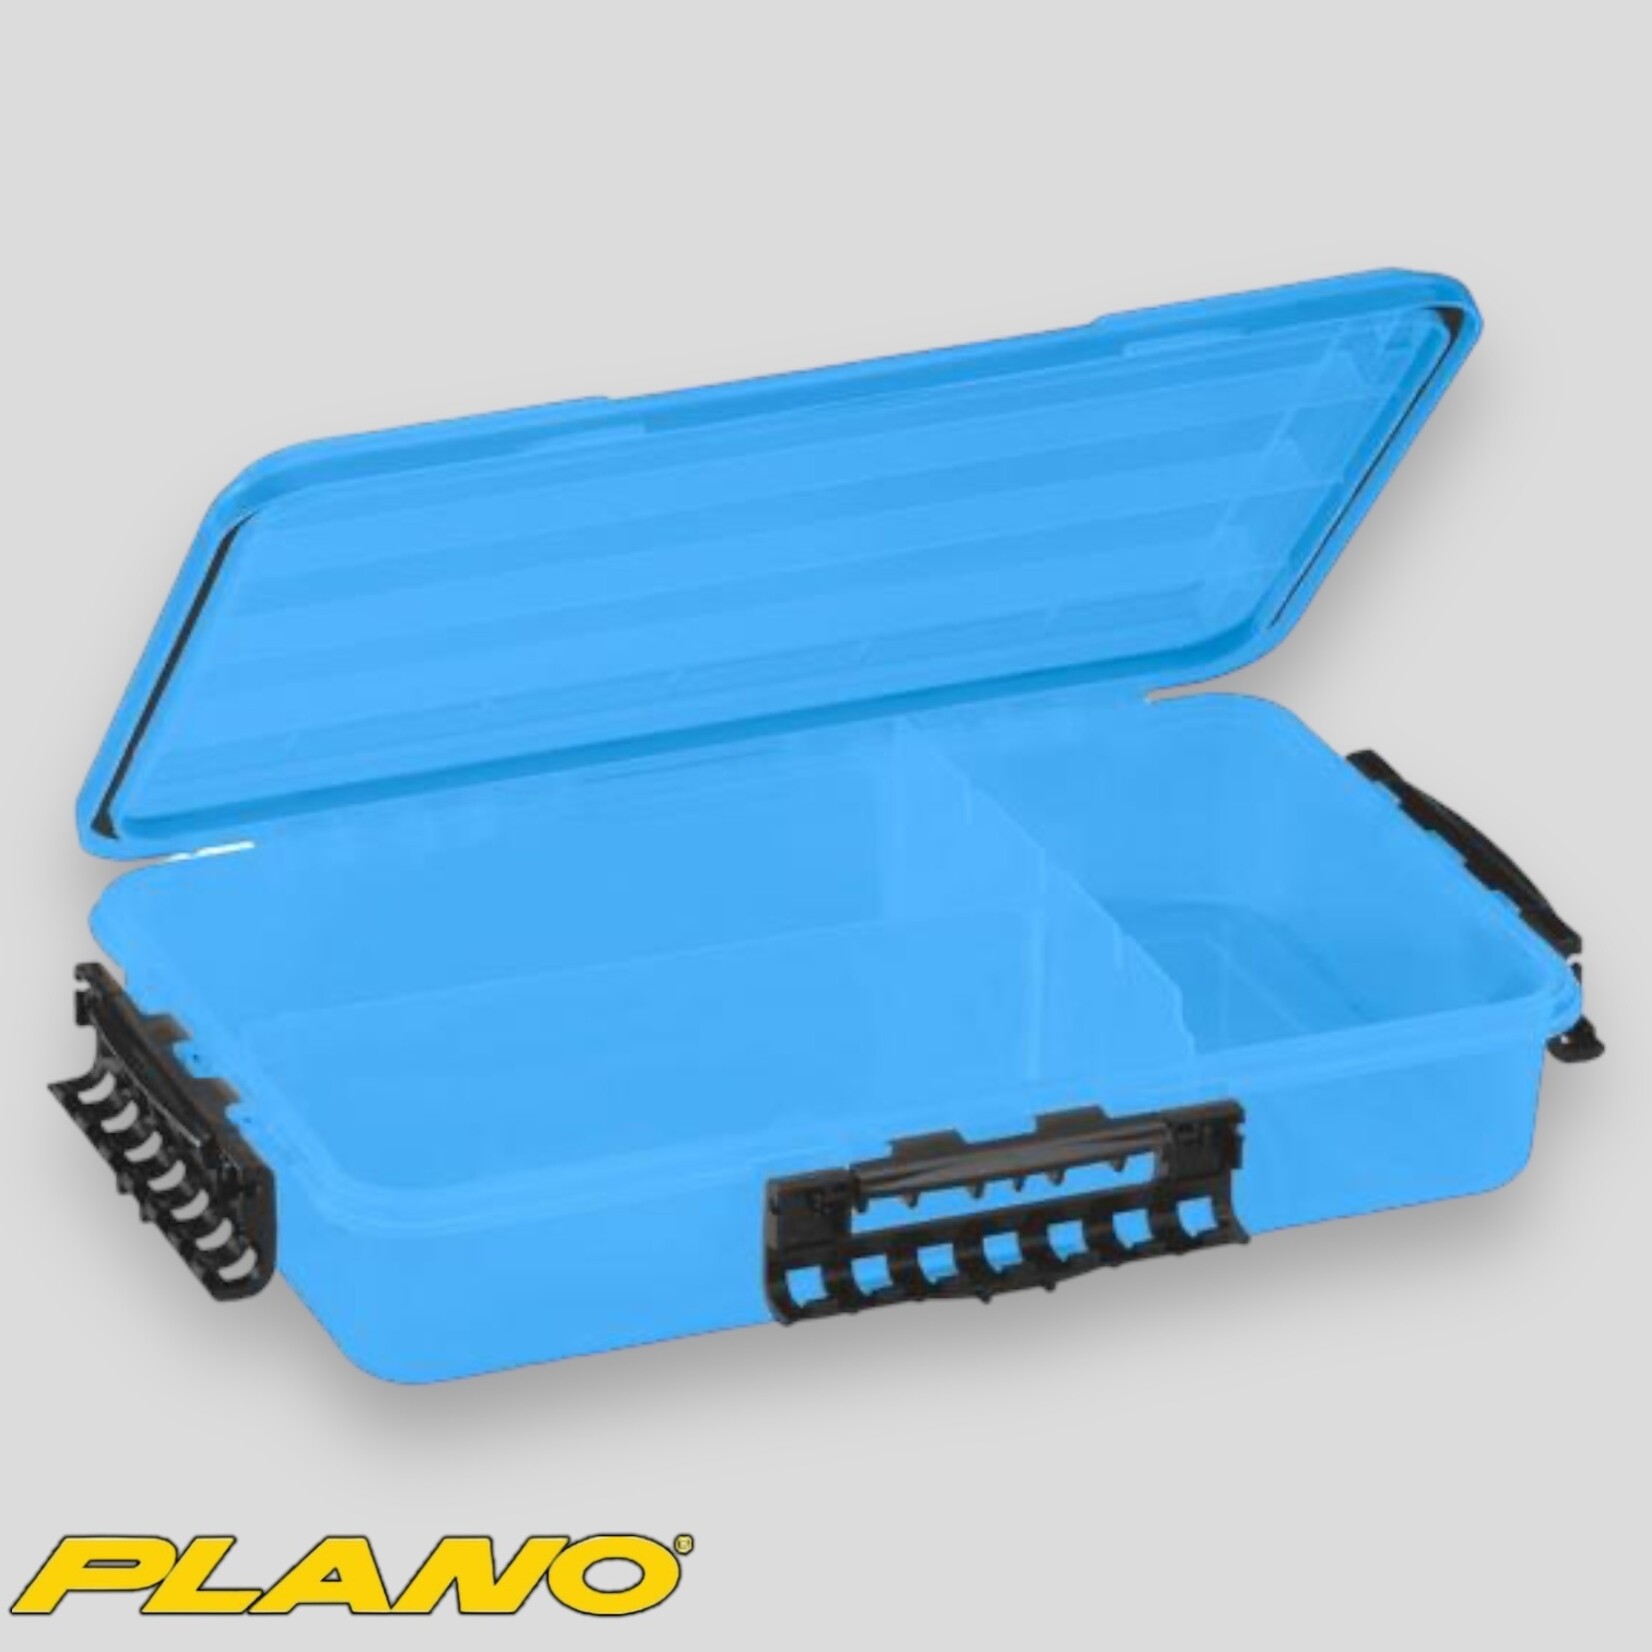 Plano Plano Waterproof StowAway Marine Box